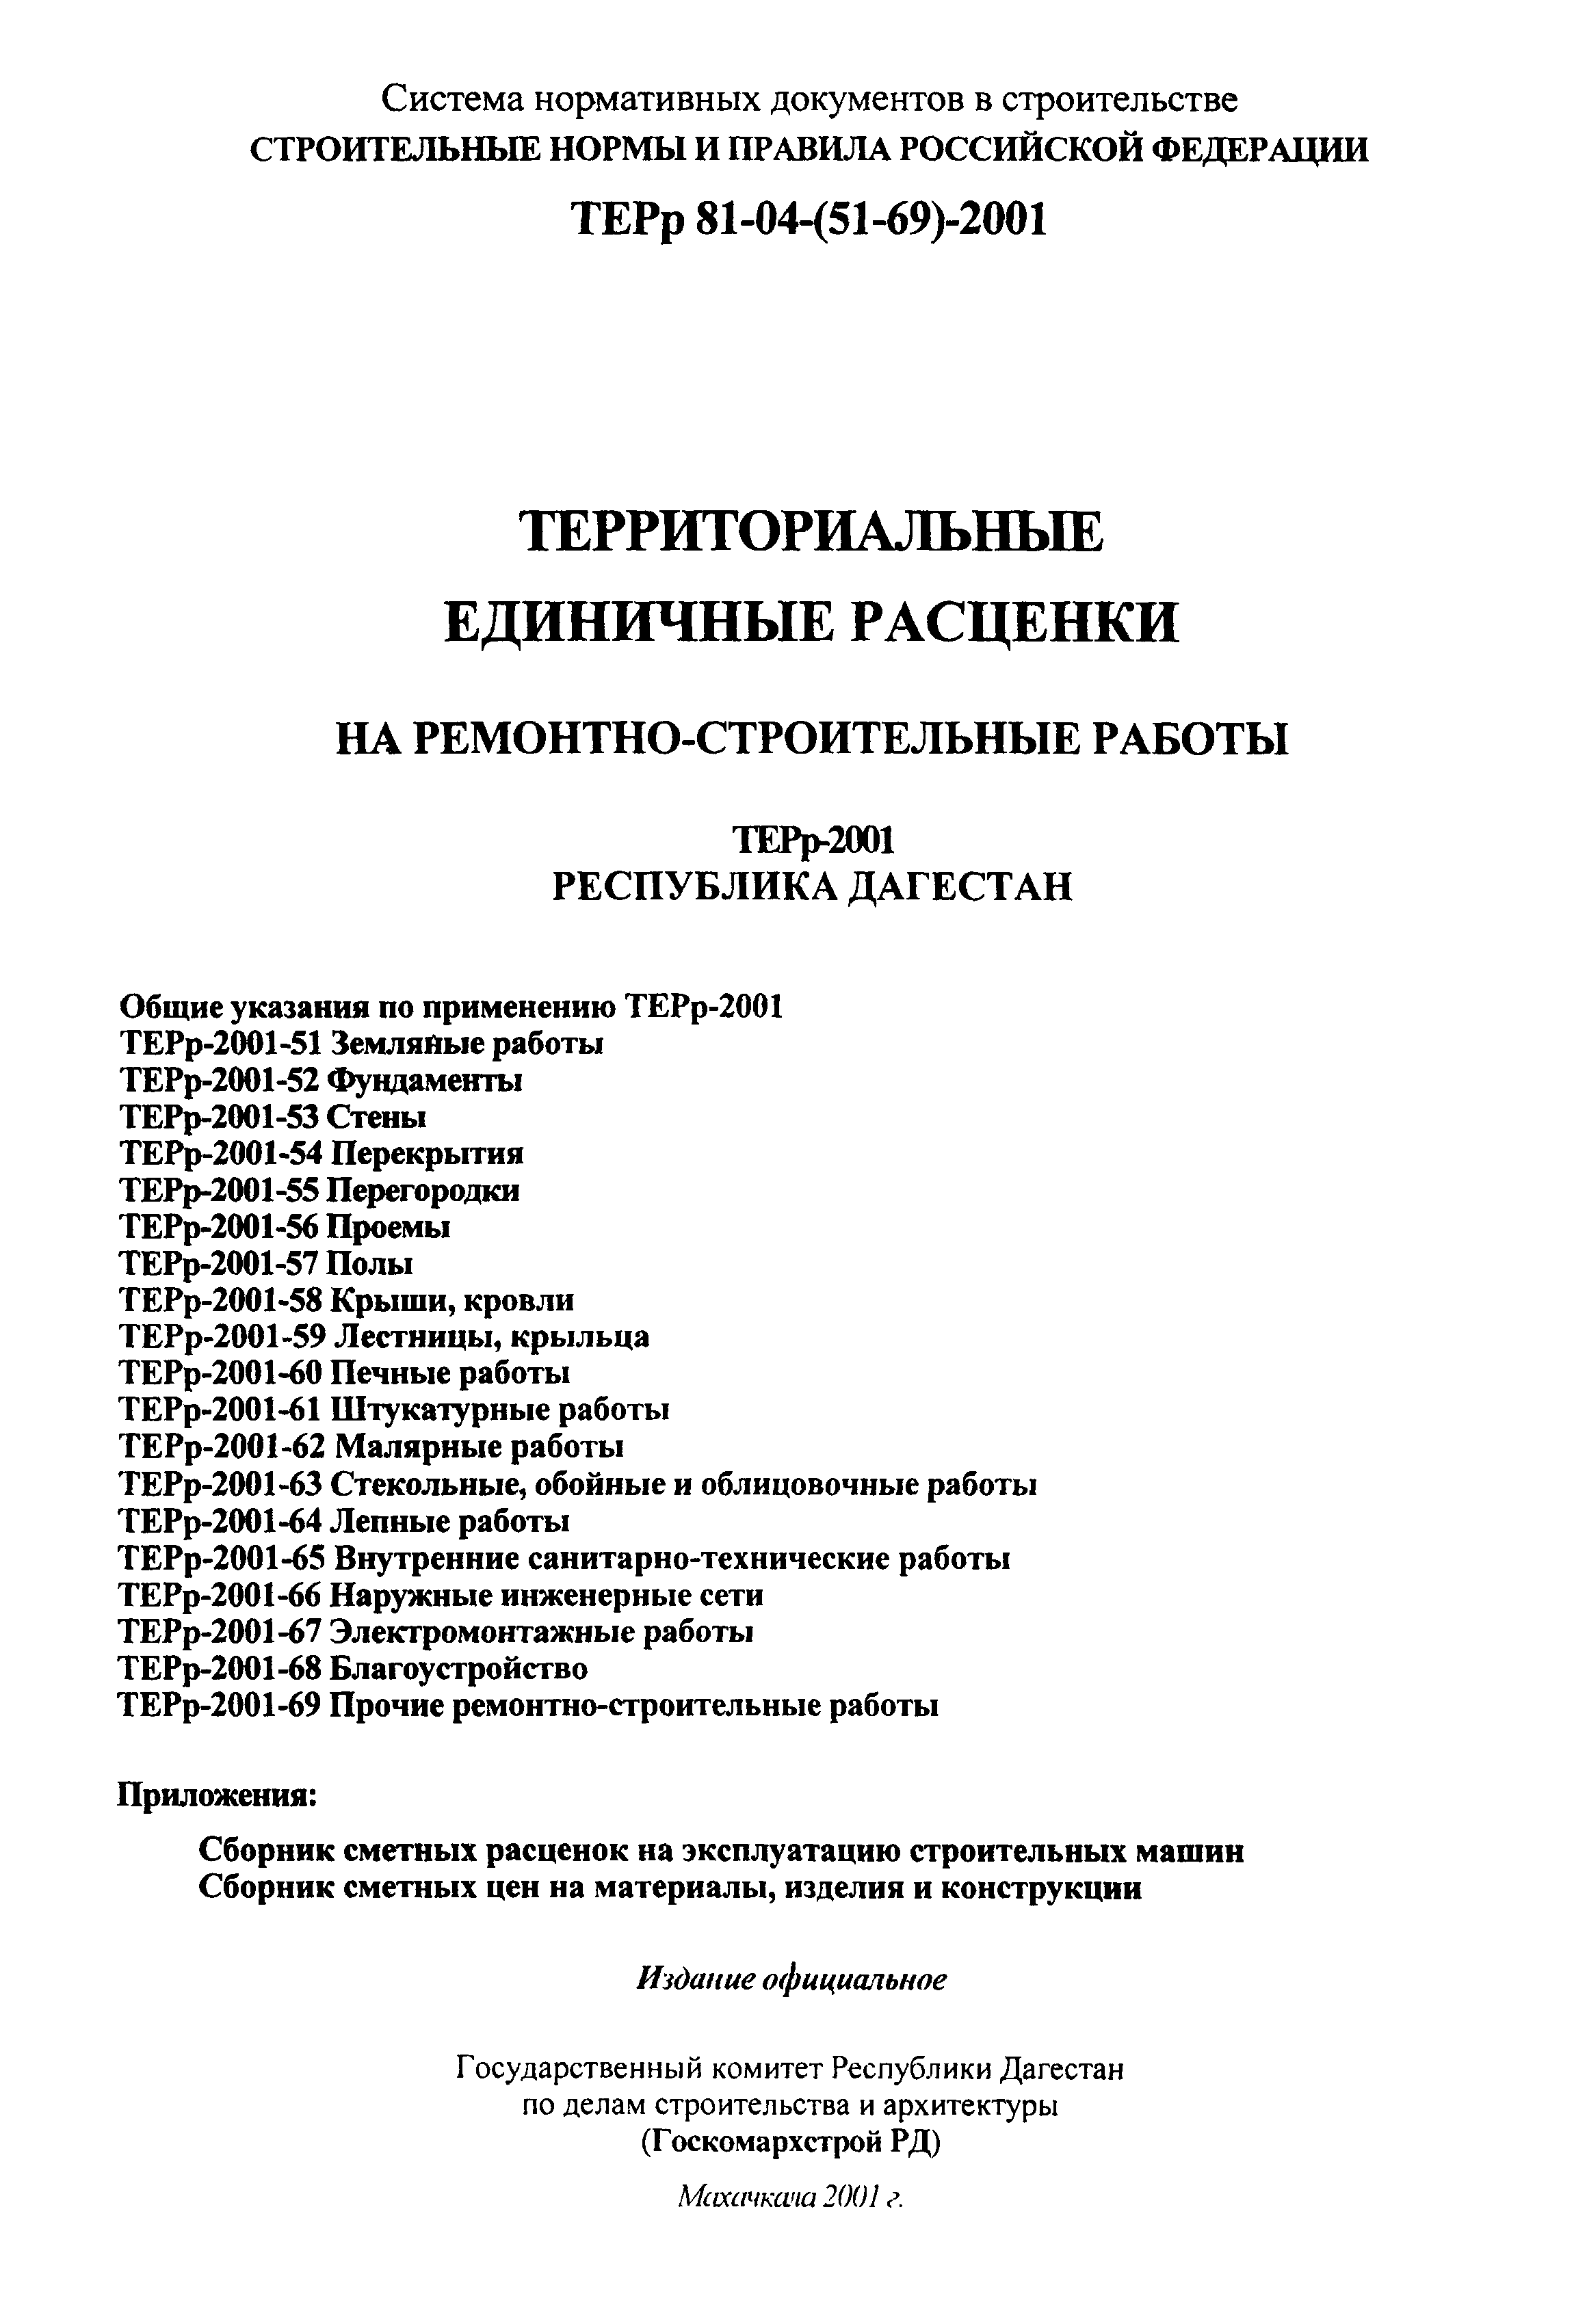 ТЕРр Республика Дагестан 2001-53